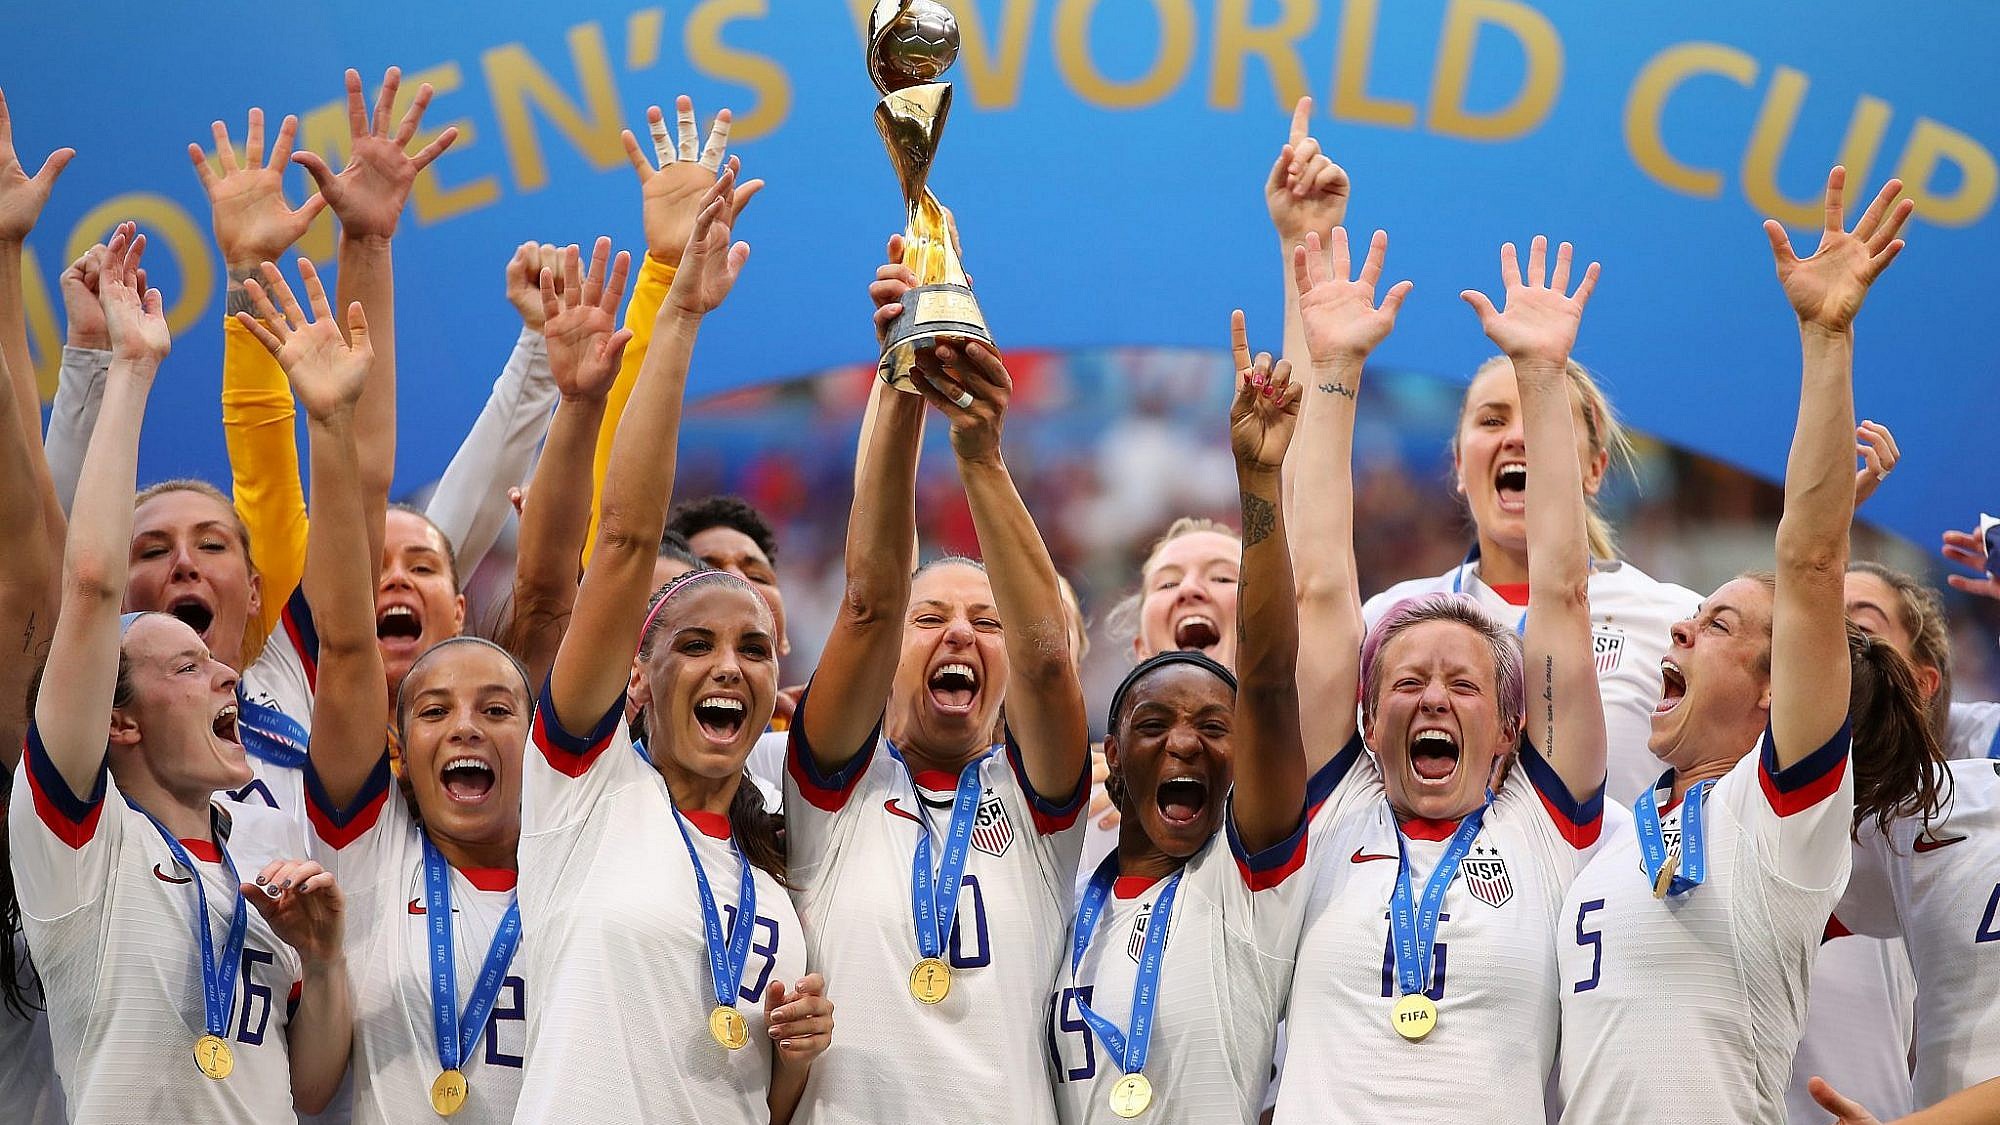 נבחרת ארה"ב, הזוכה במונדיאל הנשים | צילום: Richard Heathcote/Getty Images